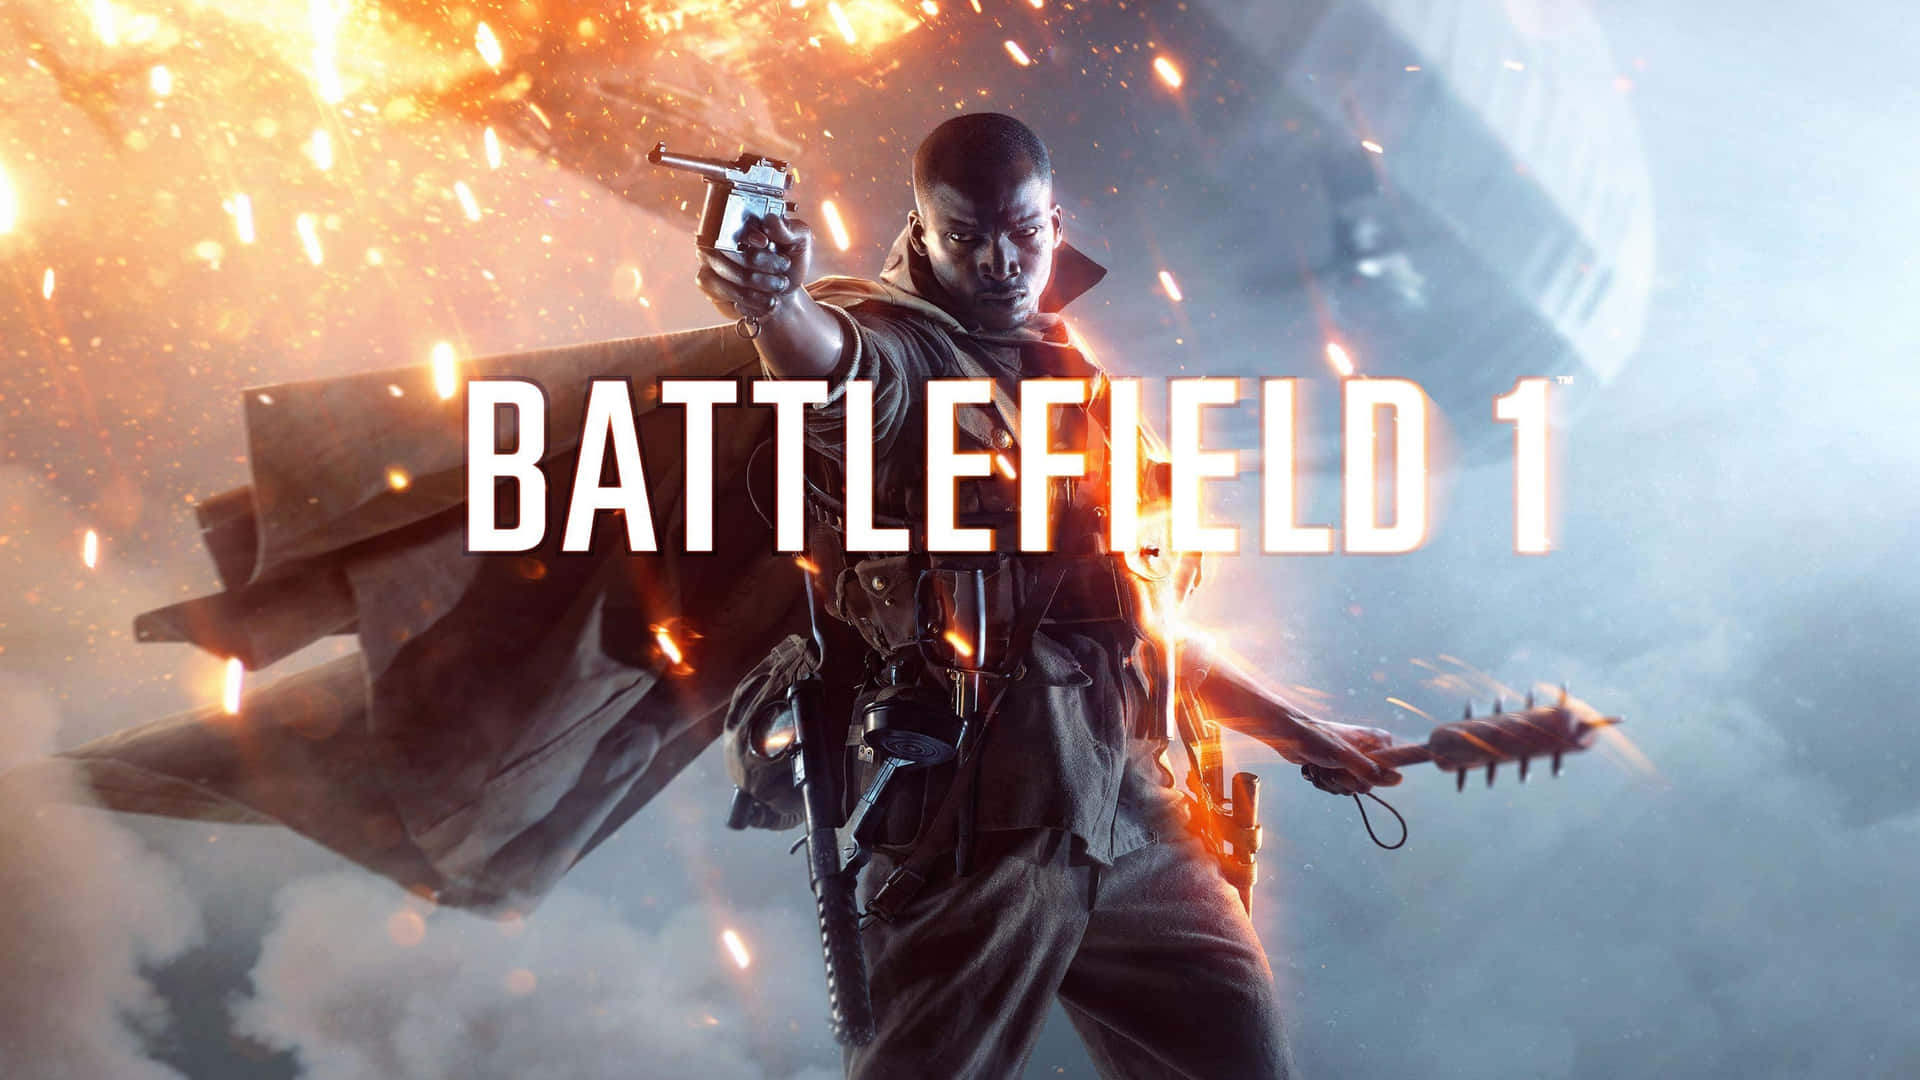 1440p Battlefield 1 Official Art Background